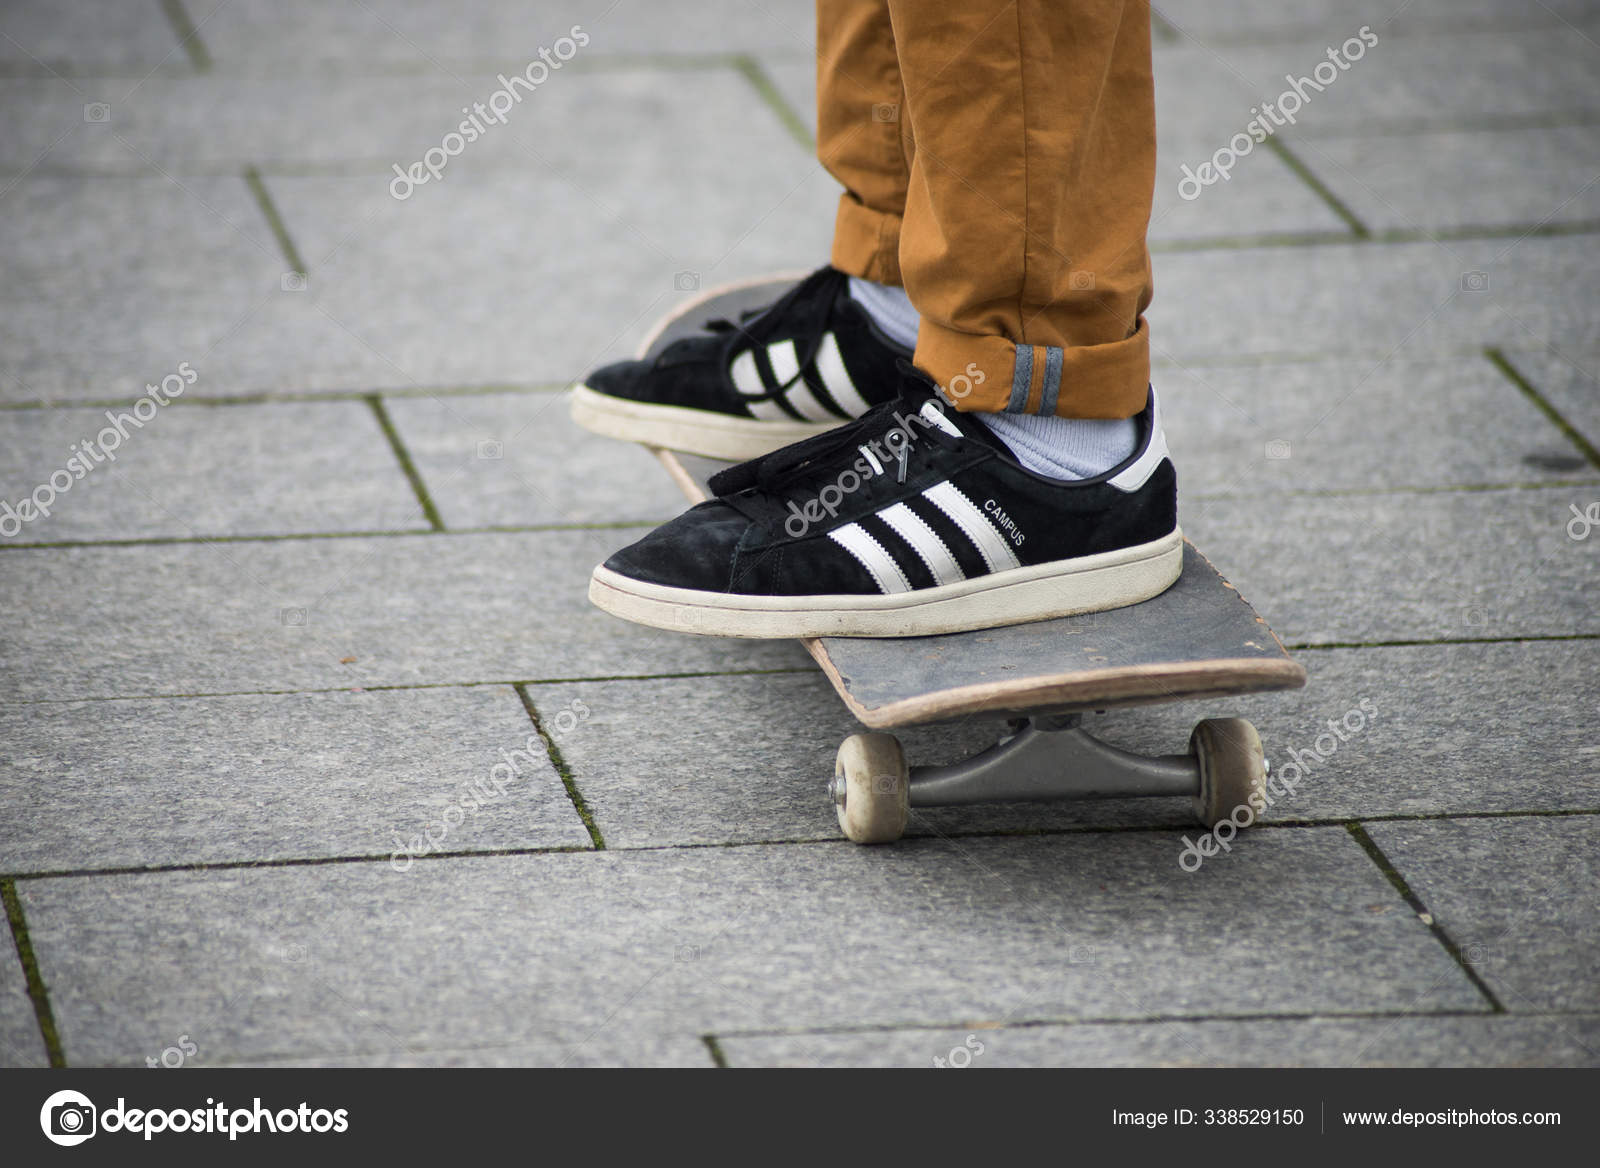 de con zapatillas negras de Adidas de pie sobre tabla skate en la calle — Foto editorial de stock NeydtStock #338529150